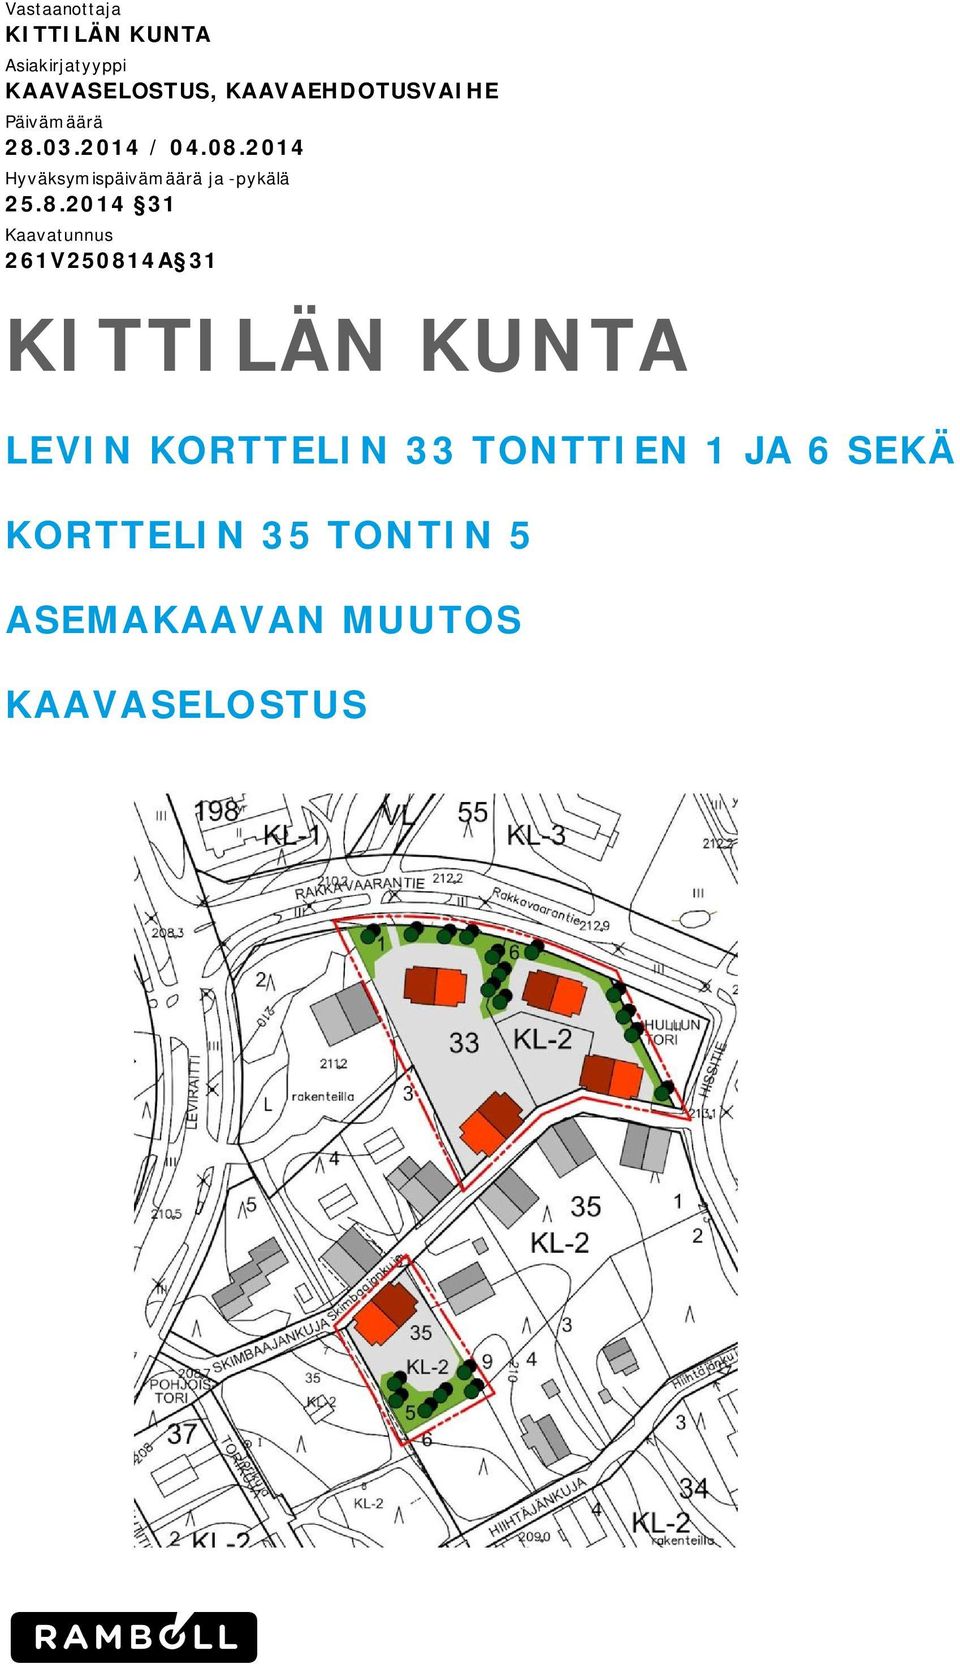 2014 Hyväksymispäivämäärä ja -pykälä 25.8.